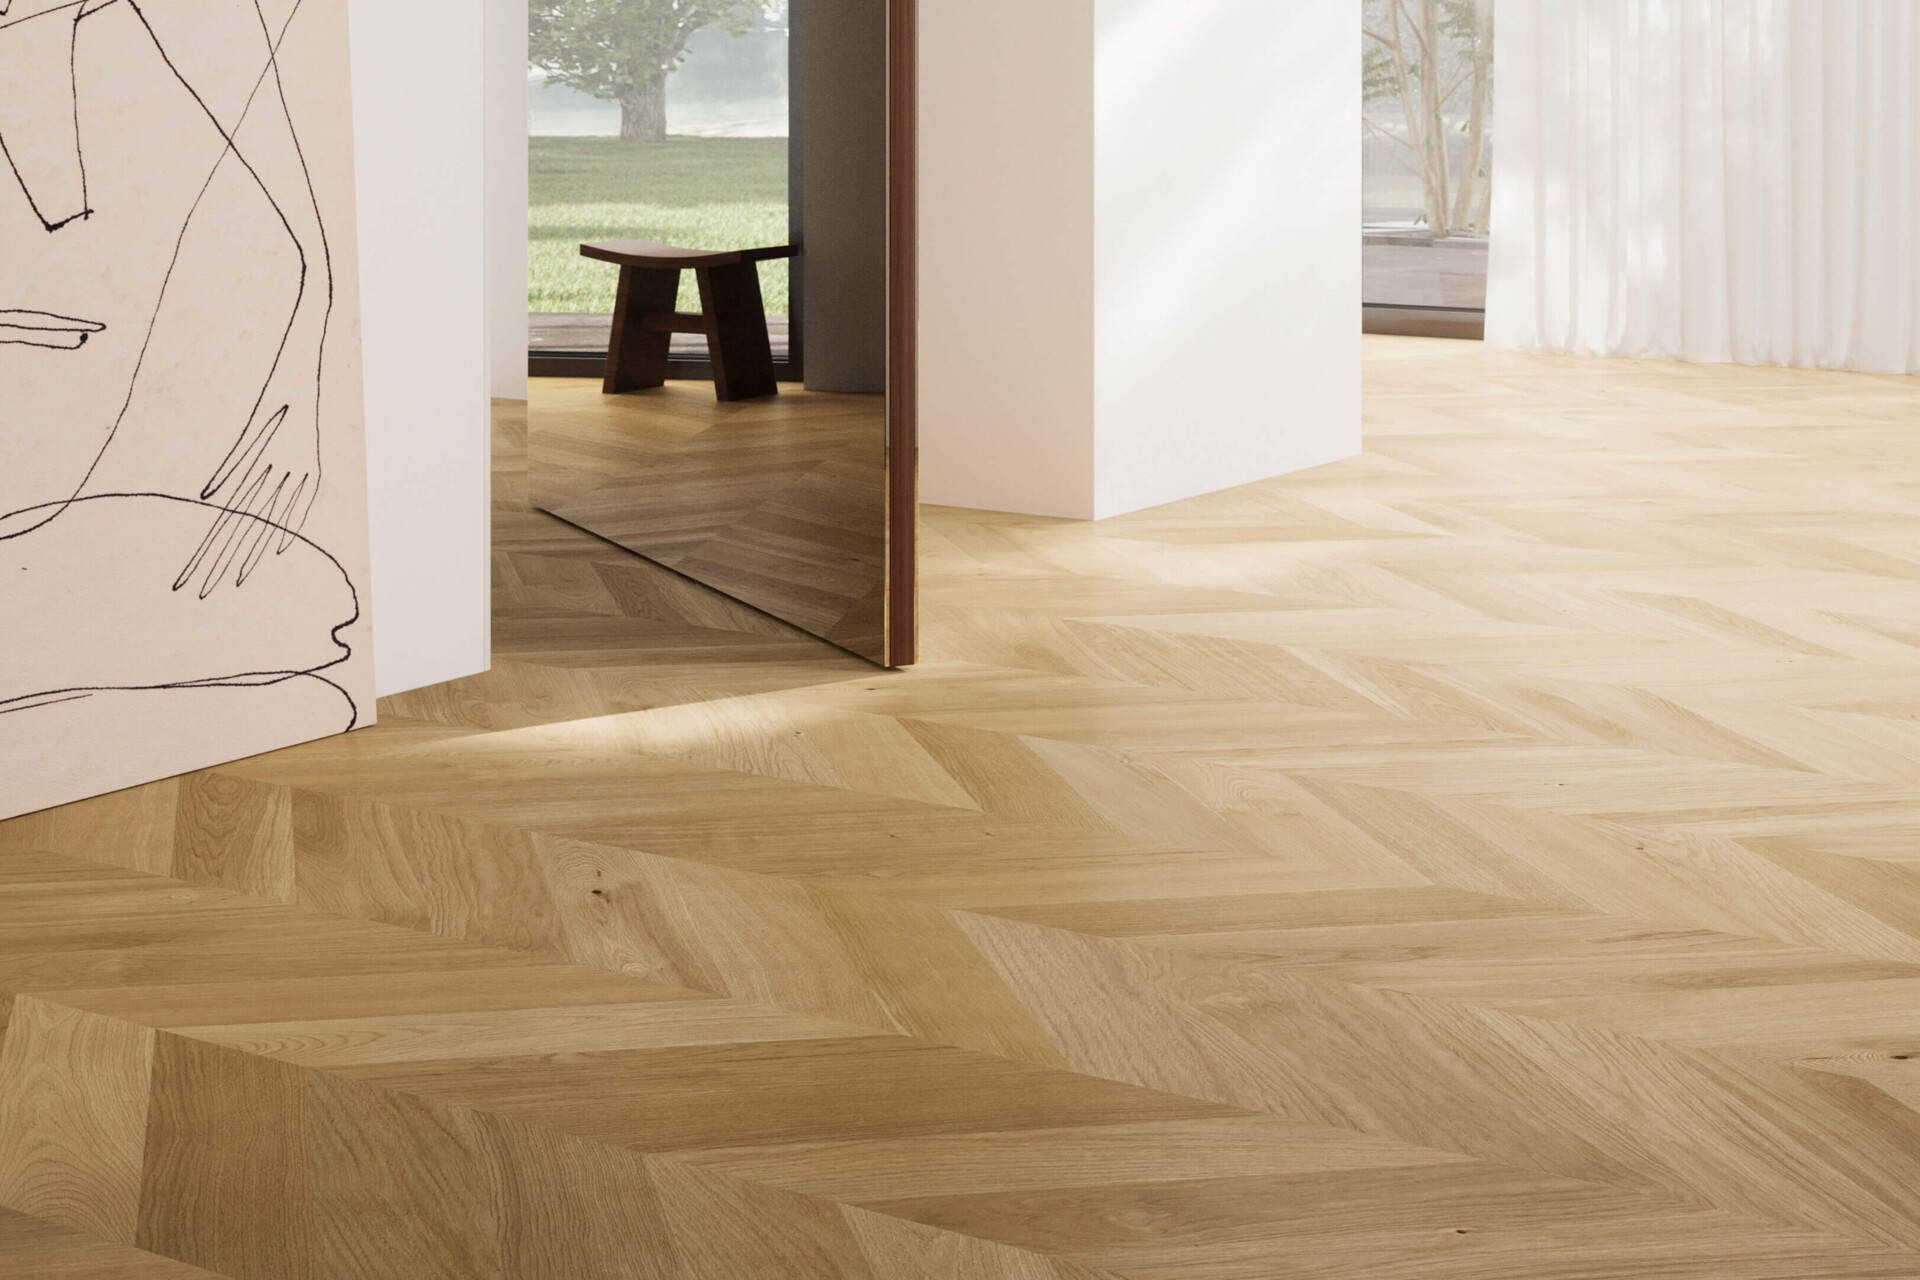 Swiss precision in unique parquet flooring